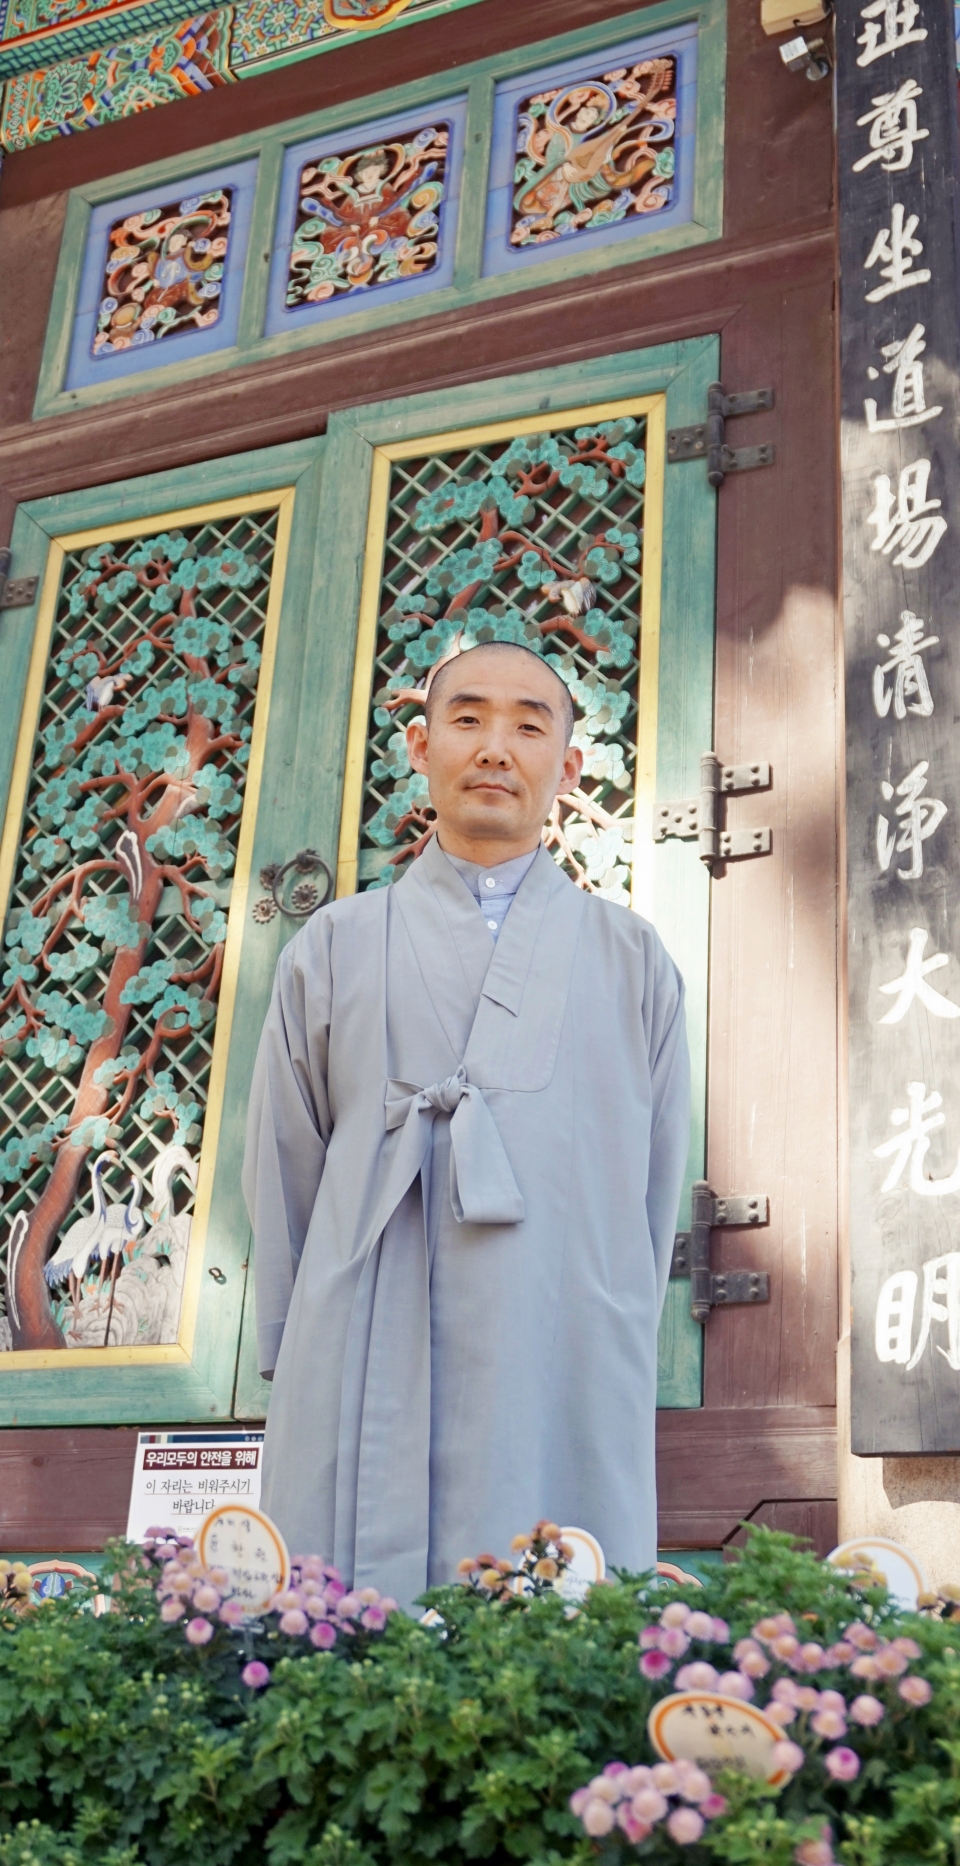 10월5일 서울 조계사에서 만난 구담스님. “불교영화의 발전을 이끌며 불교의 사회적 위상을 높이고 싶다”는 바람을 전했다.